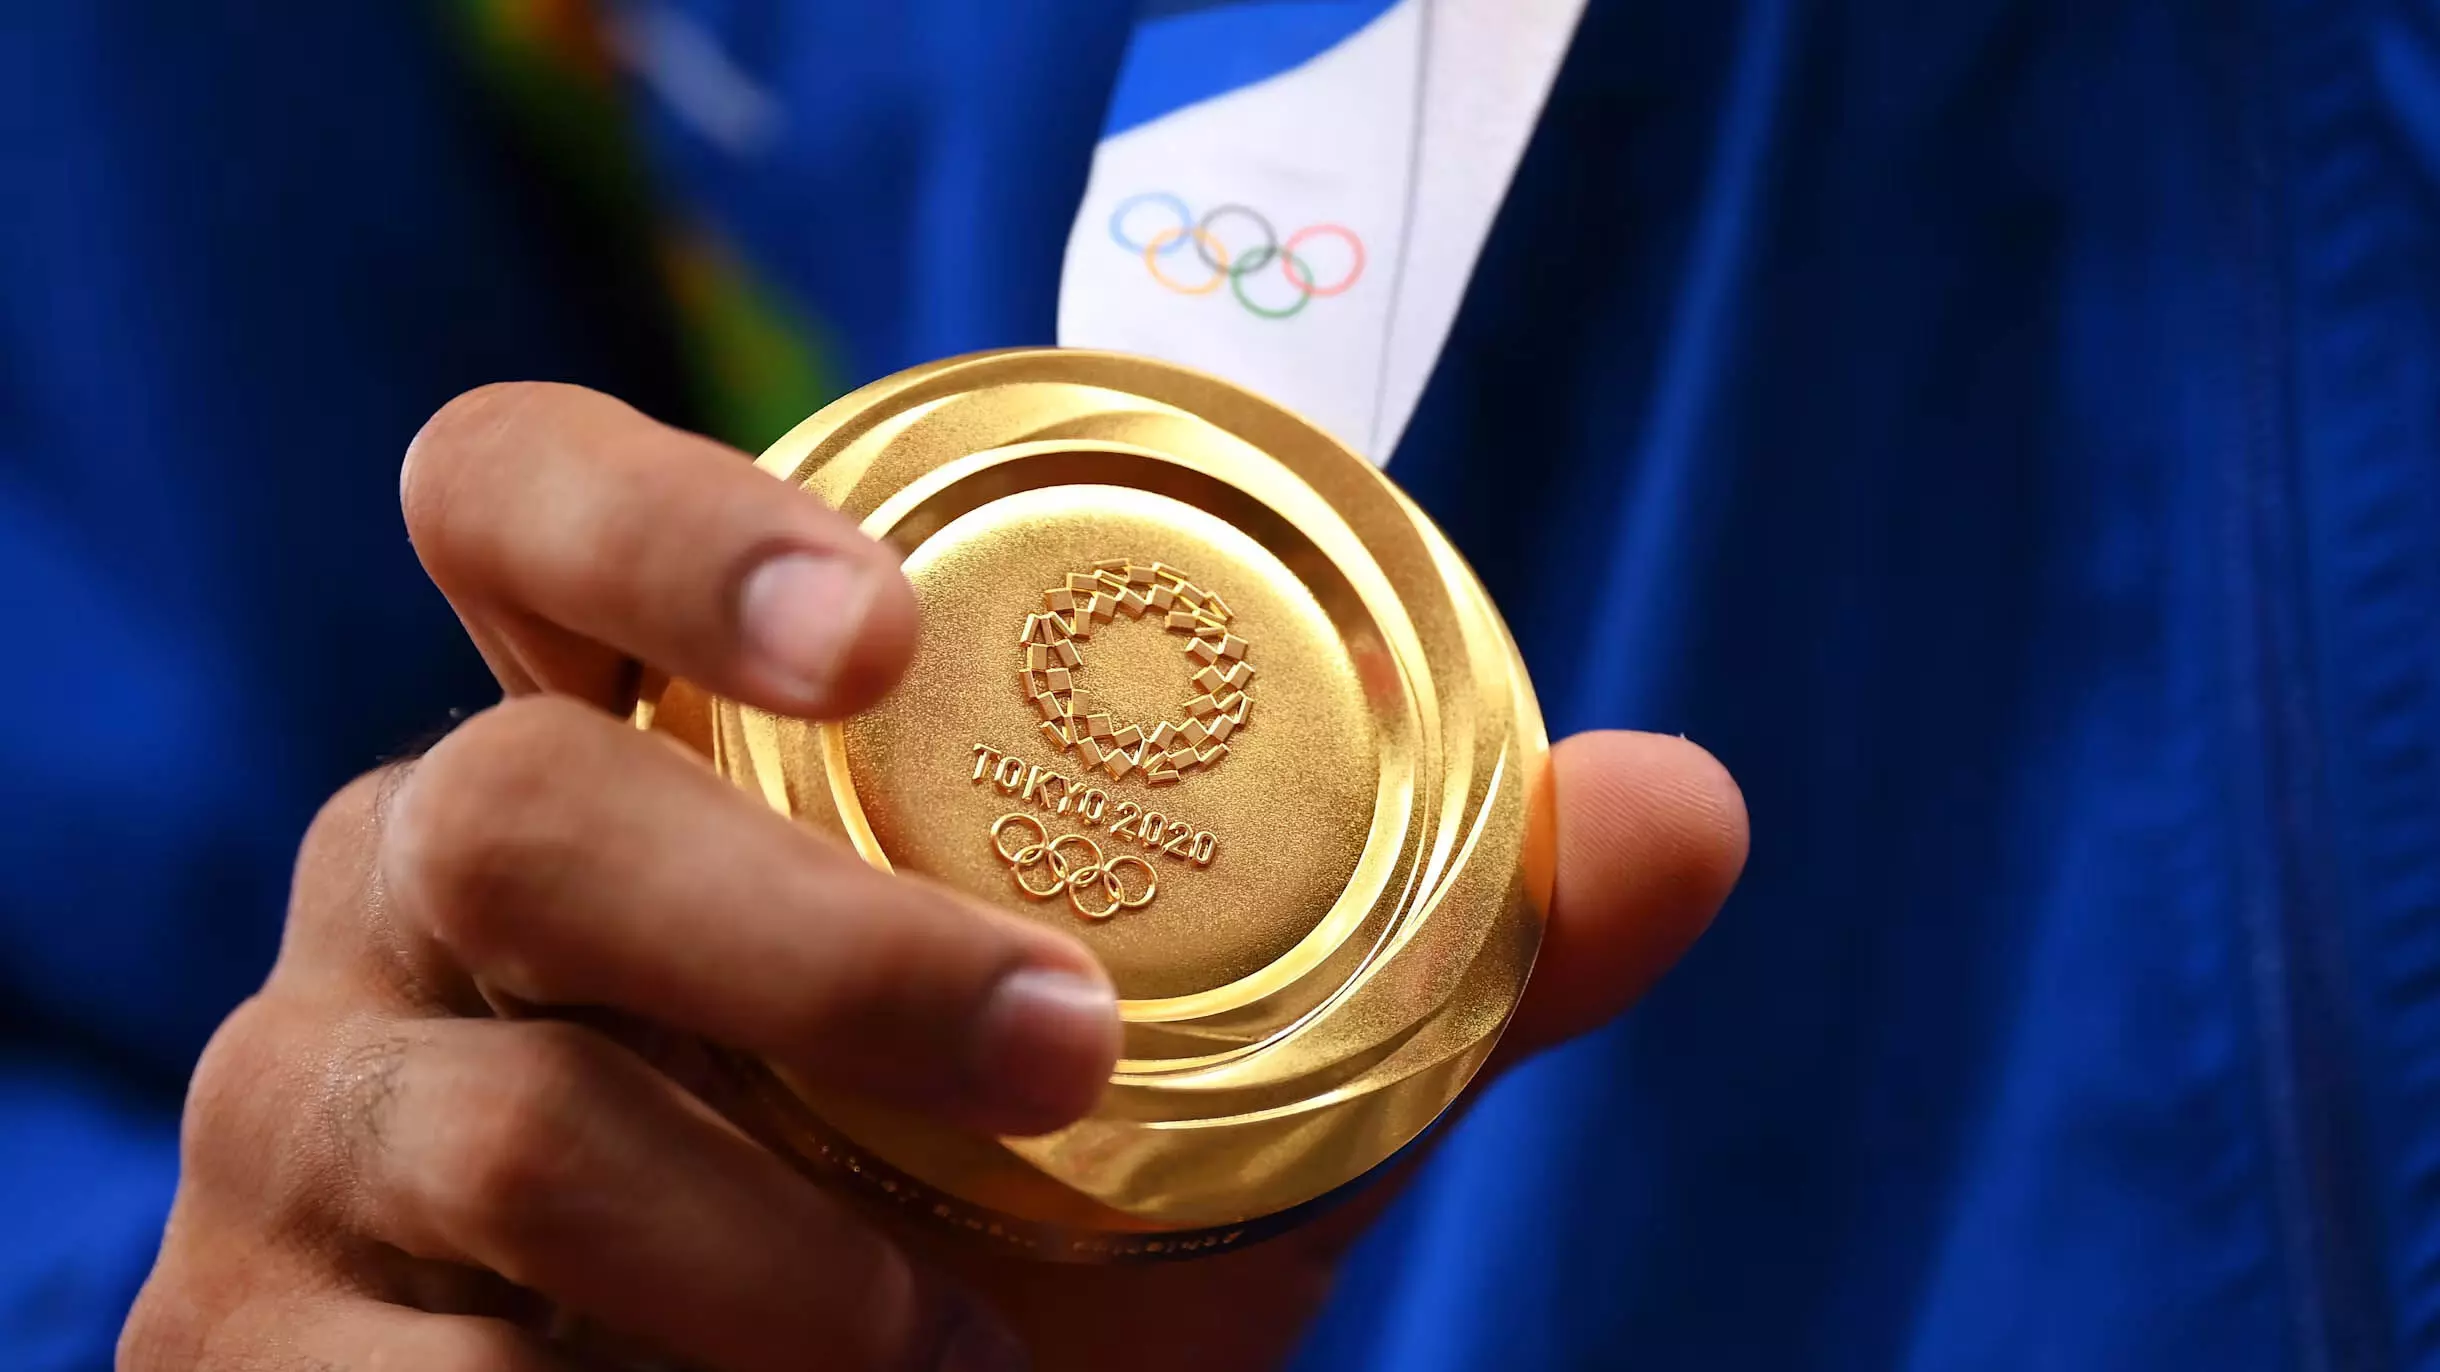 Indian athletes ओलंपिक में पदक जीतने में असफल रहे